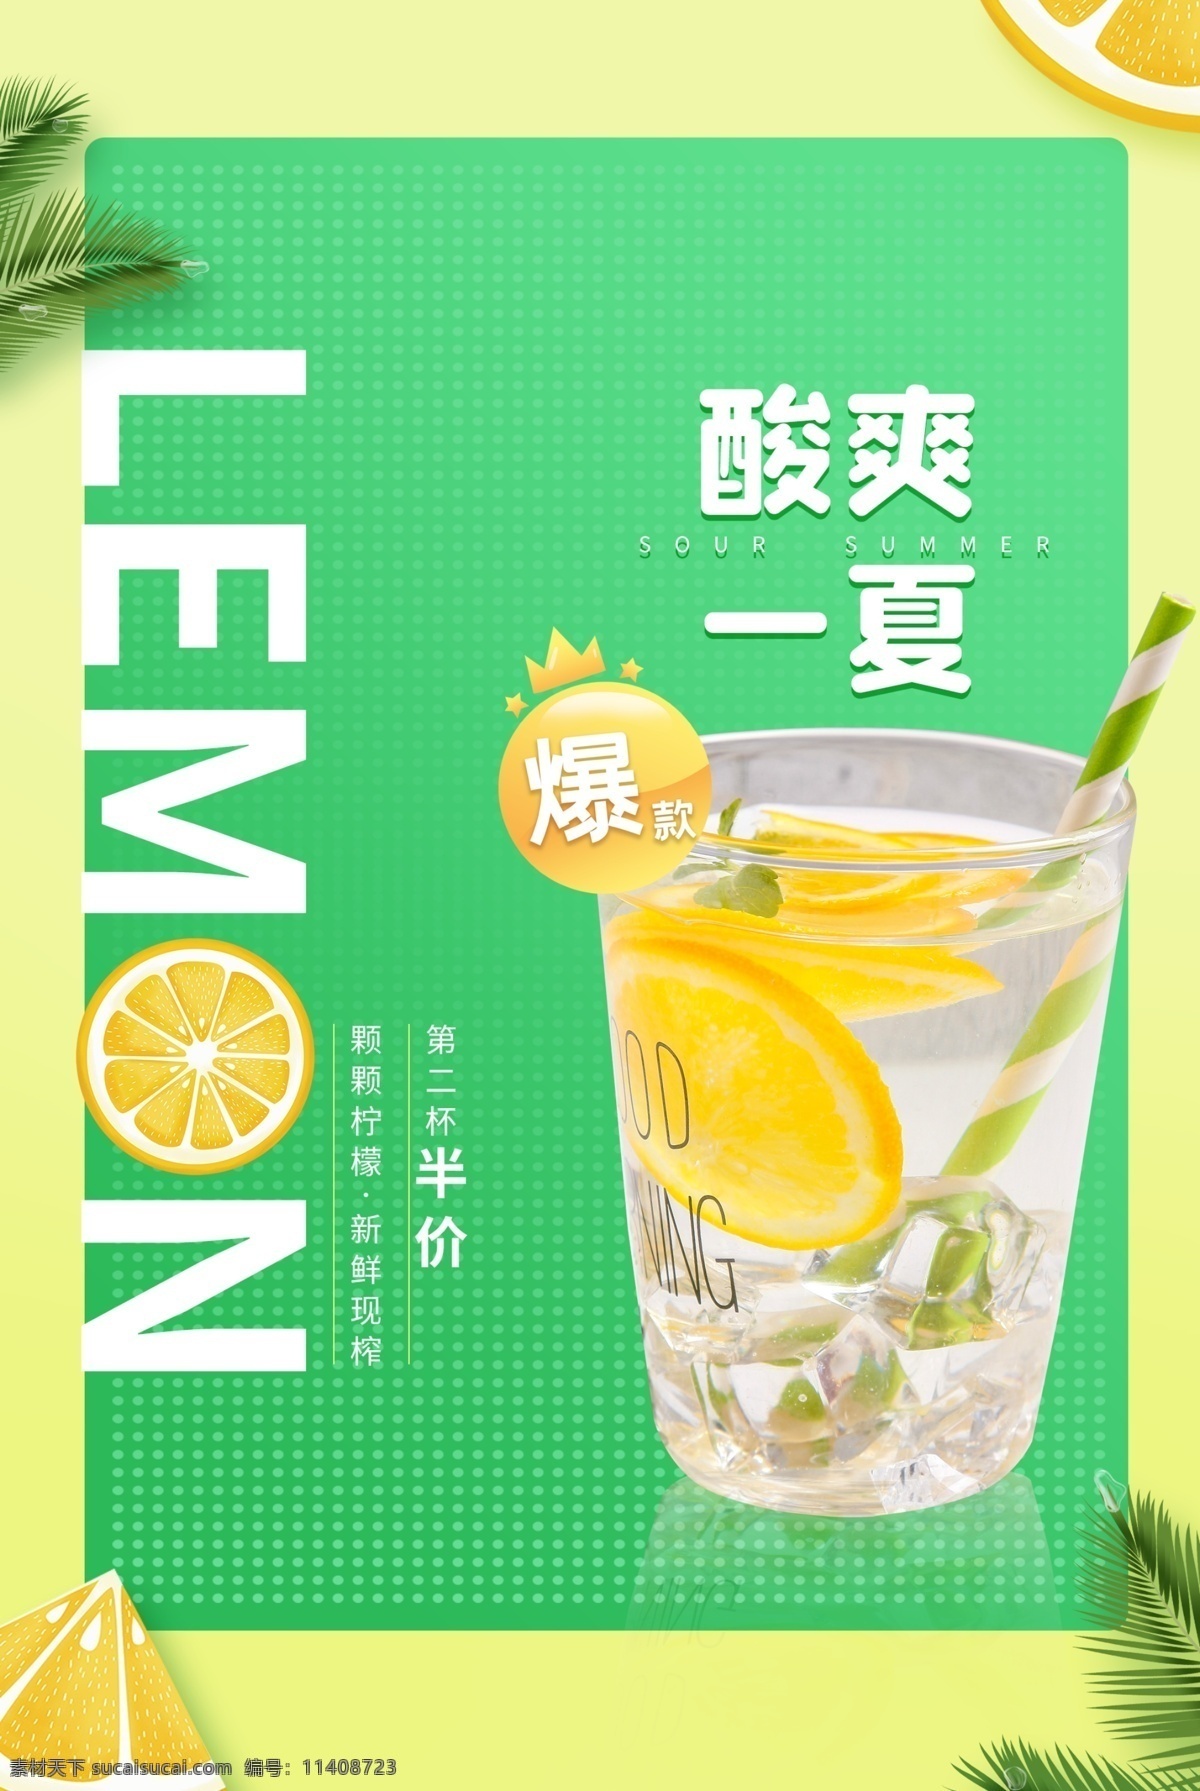 柠檬汁 饮品 水果 活动 海报 素材图片 饮料 甜品 类